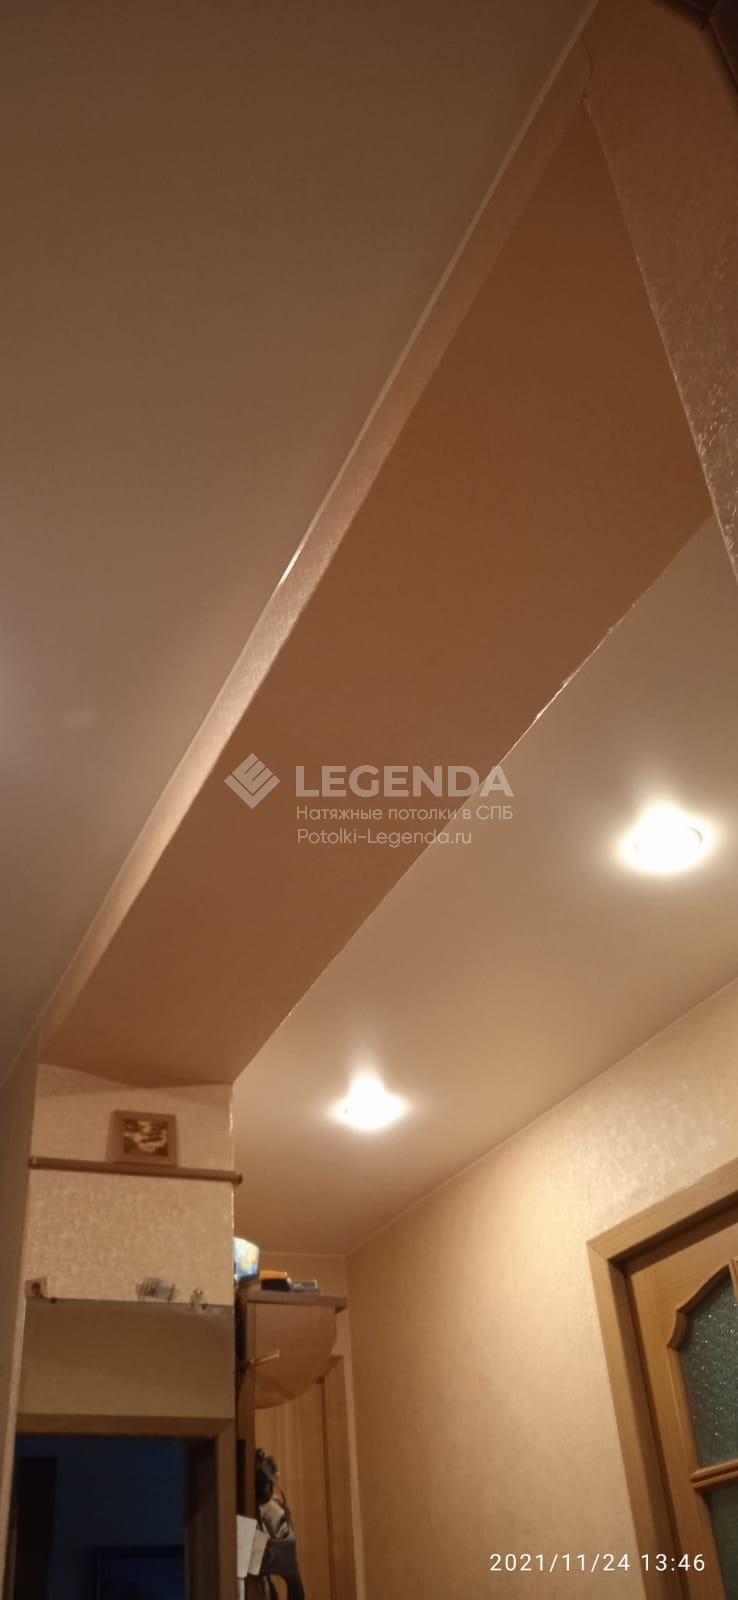 Декоративные балки на потолке — эффектный элемент любого интерьера